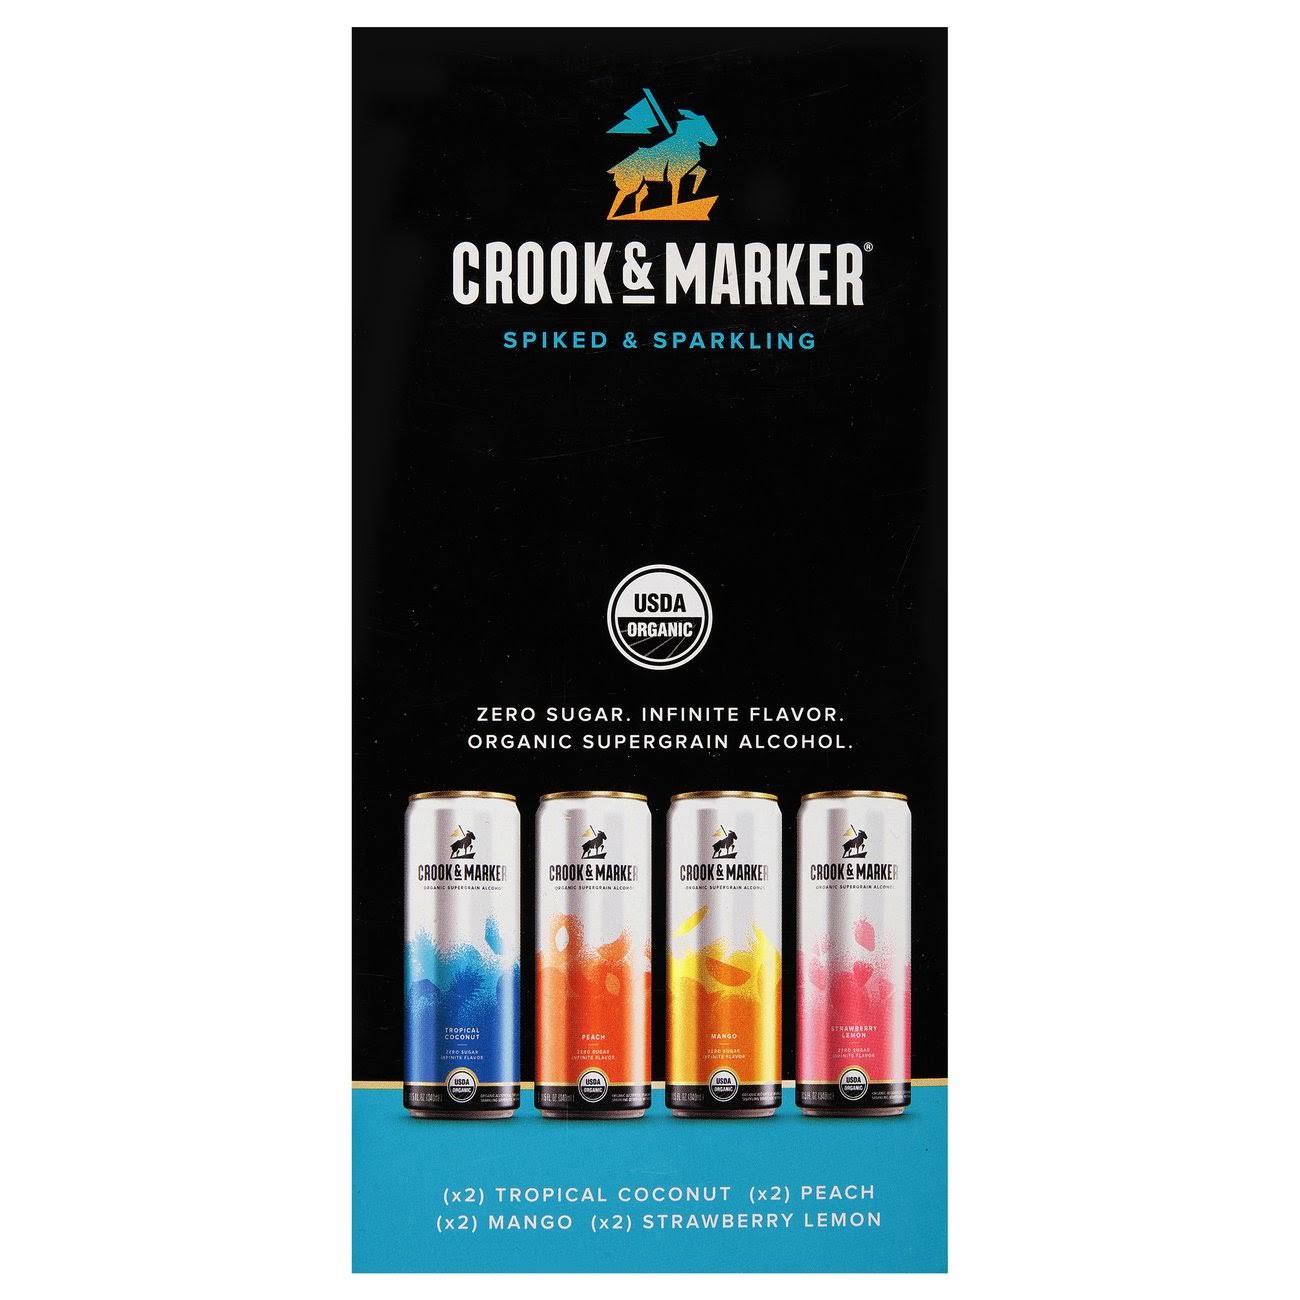 Crook & Marker Beer, Spike & Sparkling, Variety Pack - 8 pack, 11.5 fl oz cans